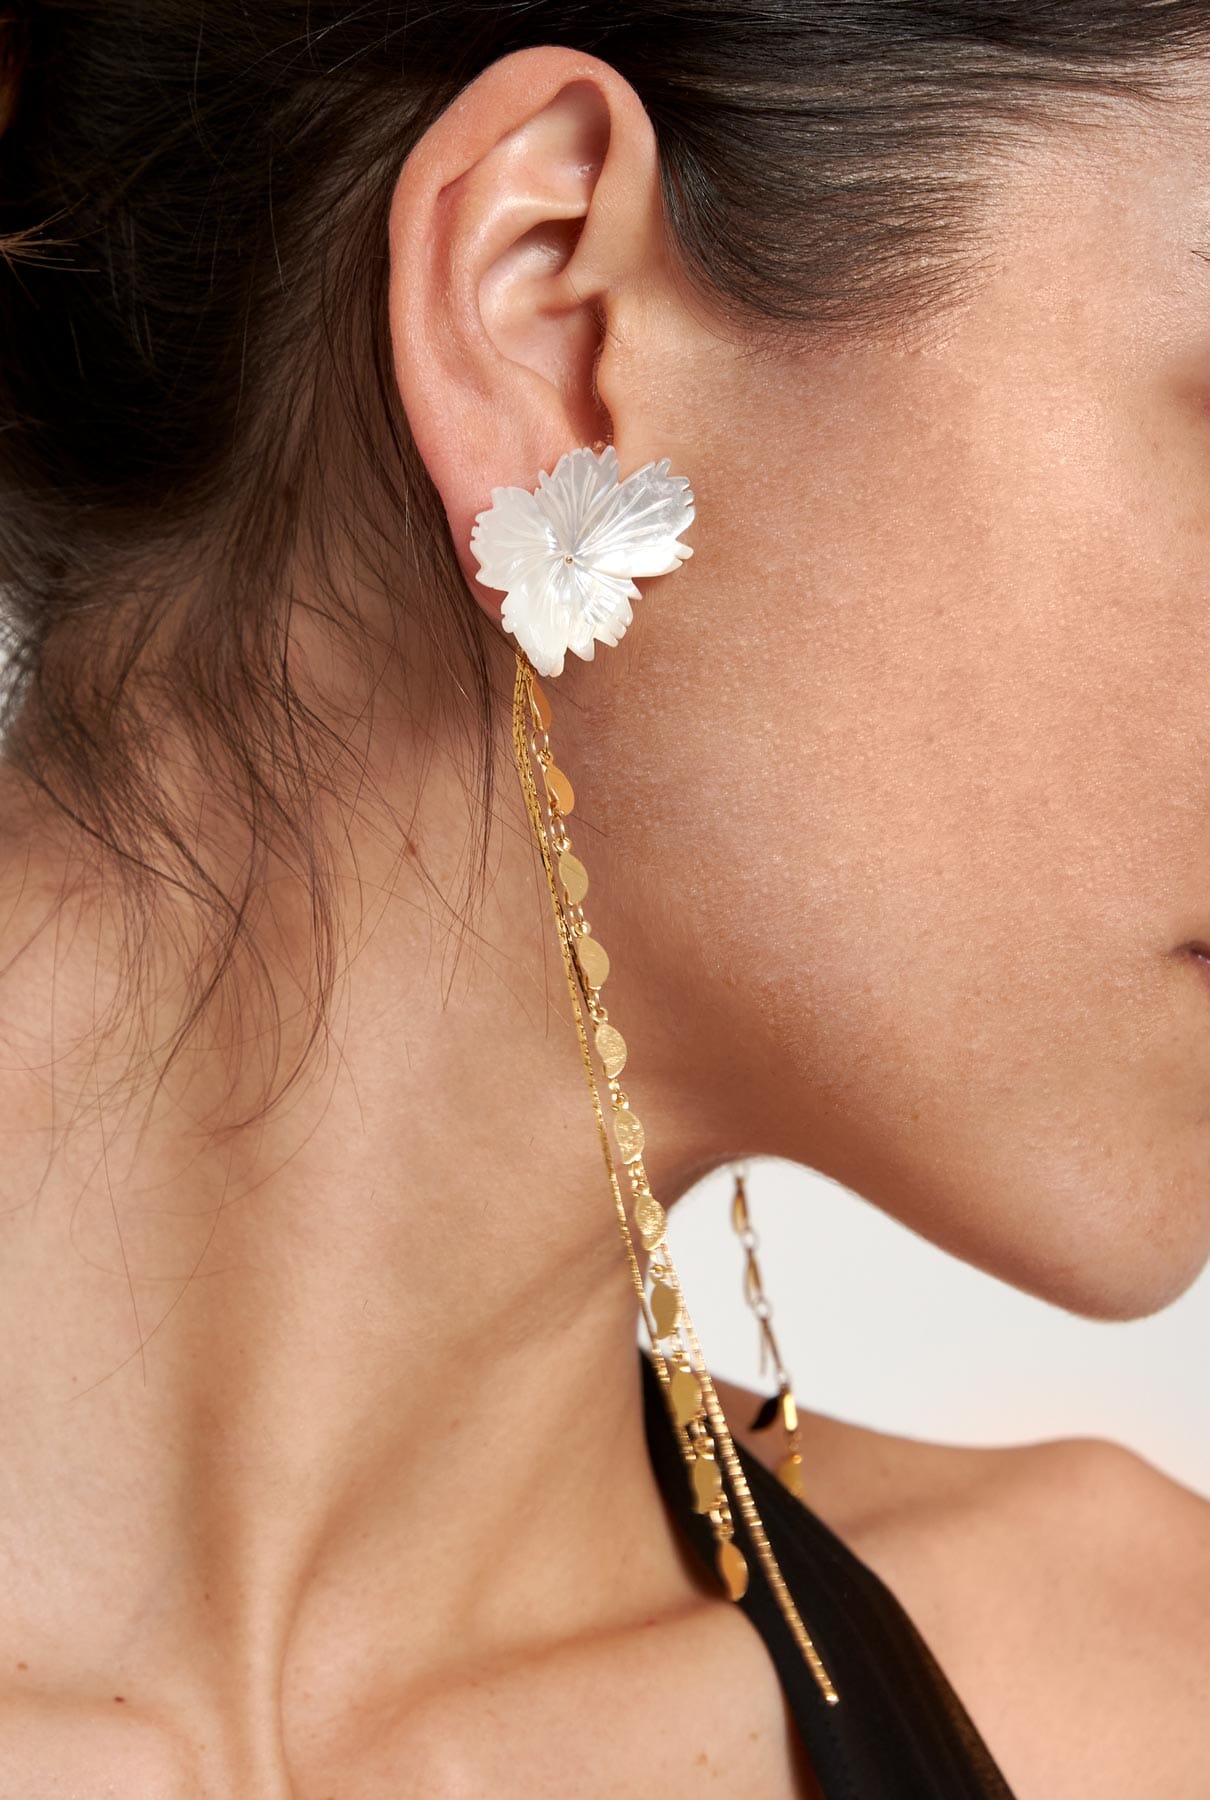 Blossom Earrings Earrings La Morenita 